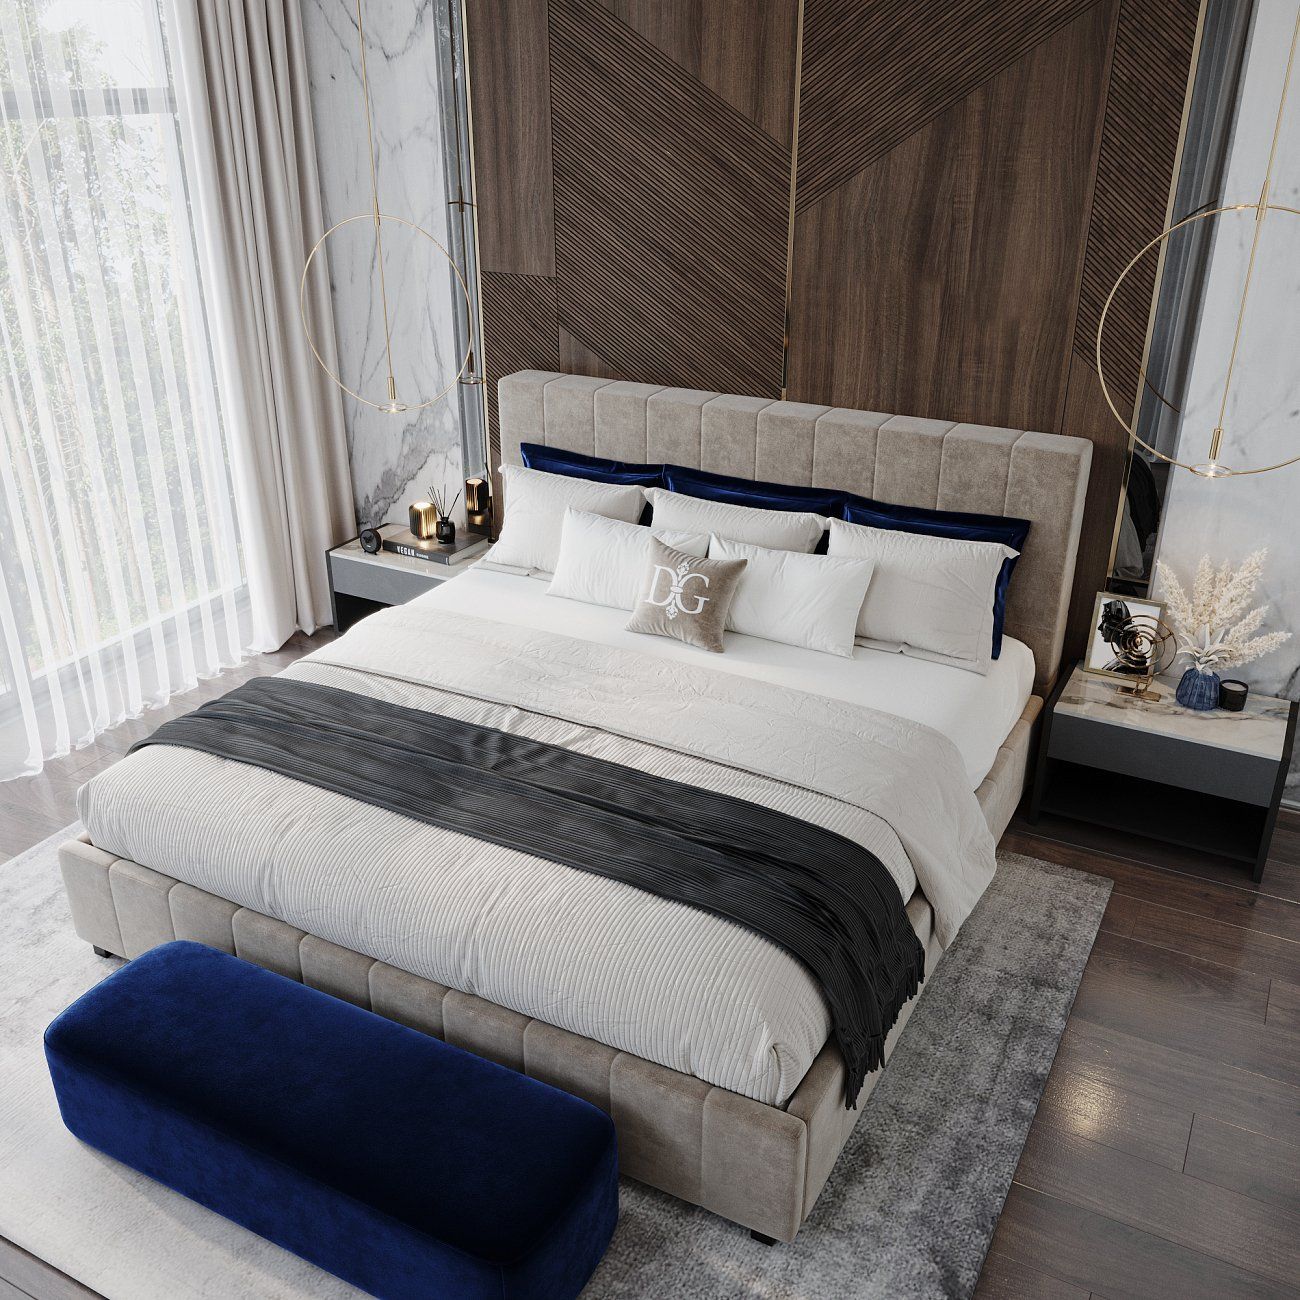 Кровать подростковая с мягкой спинкой 140х200 см светло-бежевая Shining Modern